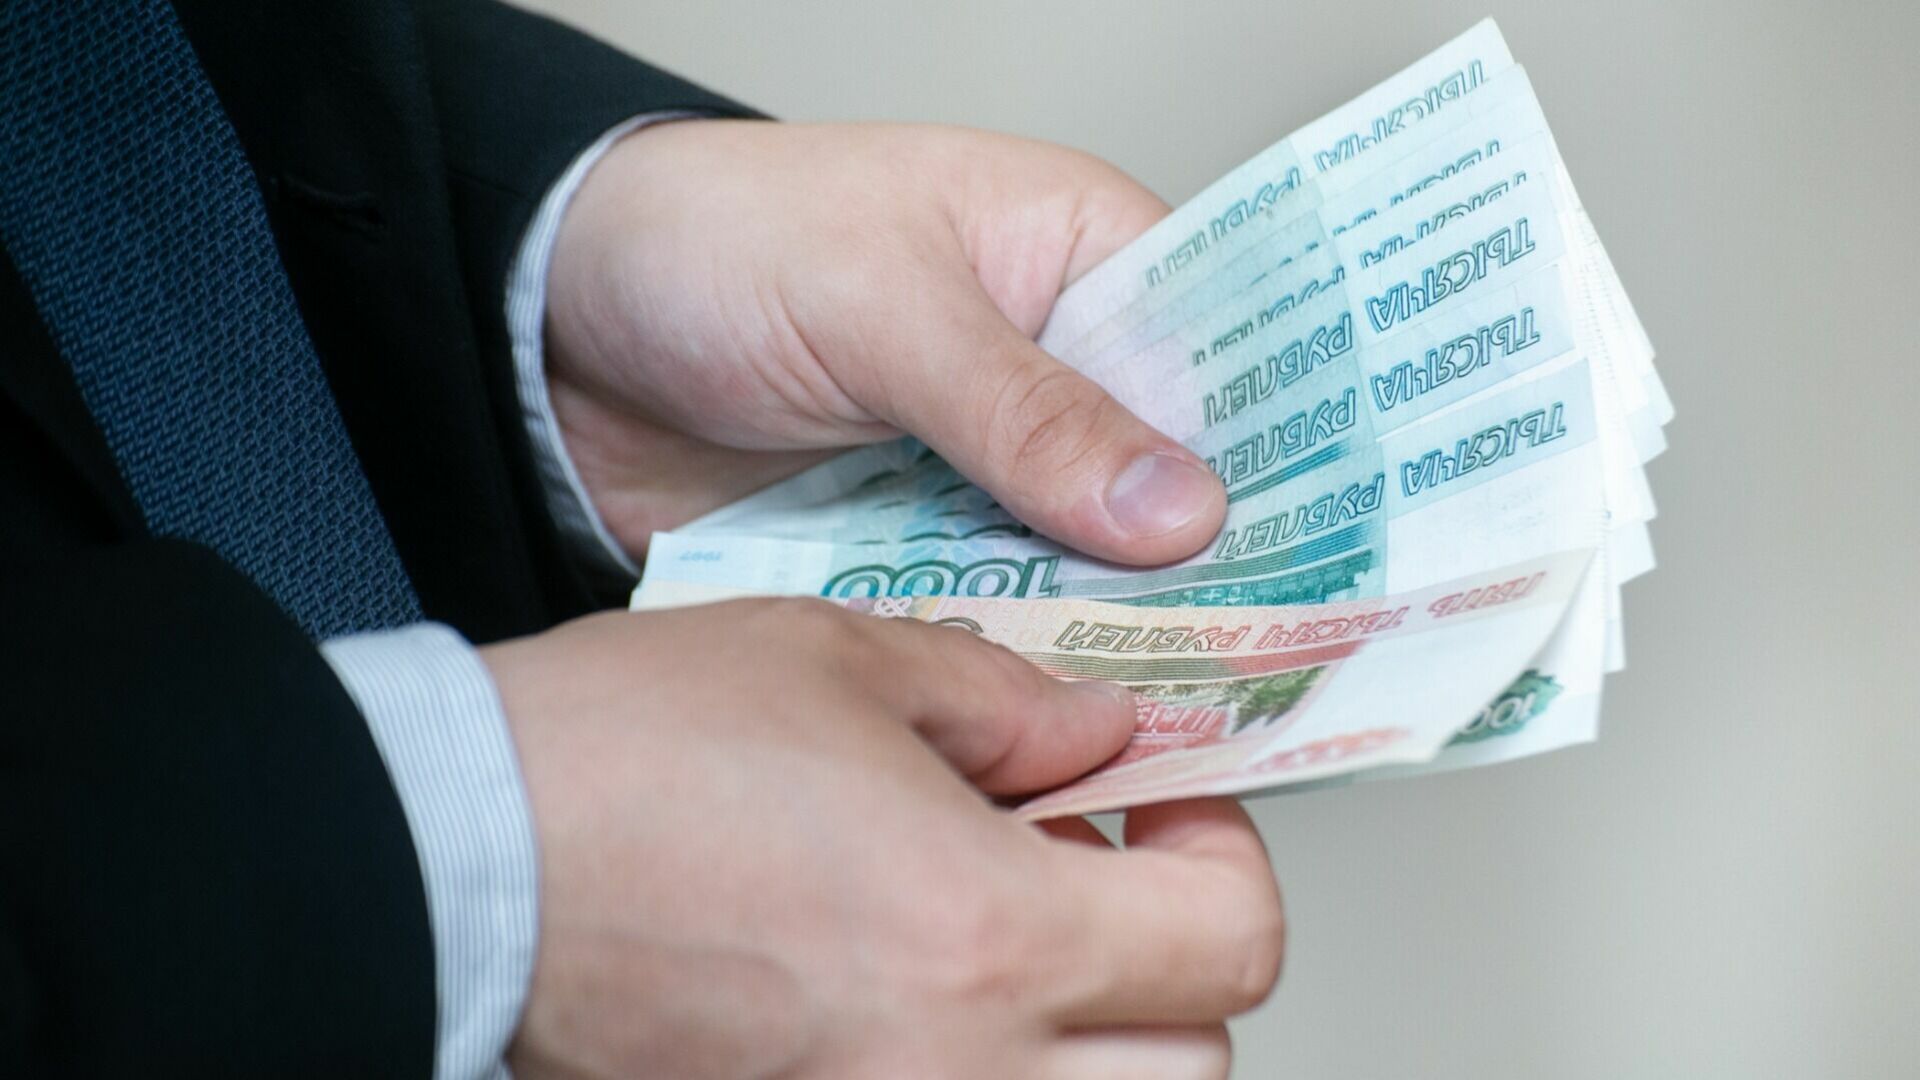 Глава поселения под Волгоградом получил мизерный штраф за растрату бюджета